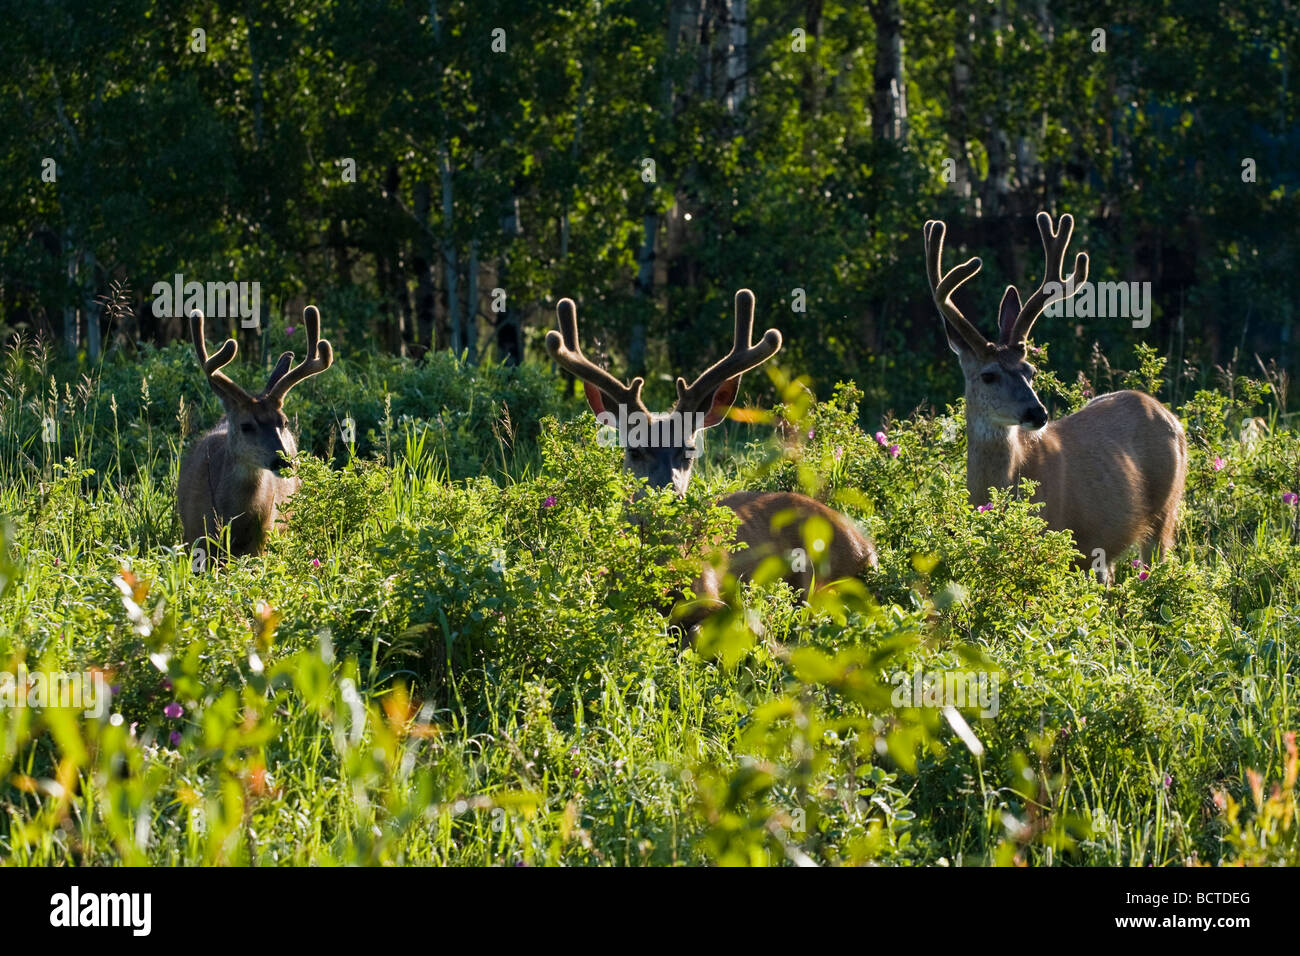 Three mule deer bucks in a forest meadow. Stock Photo